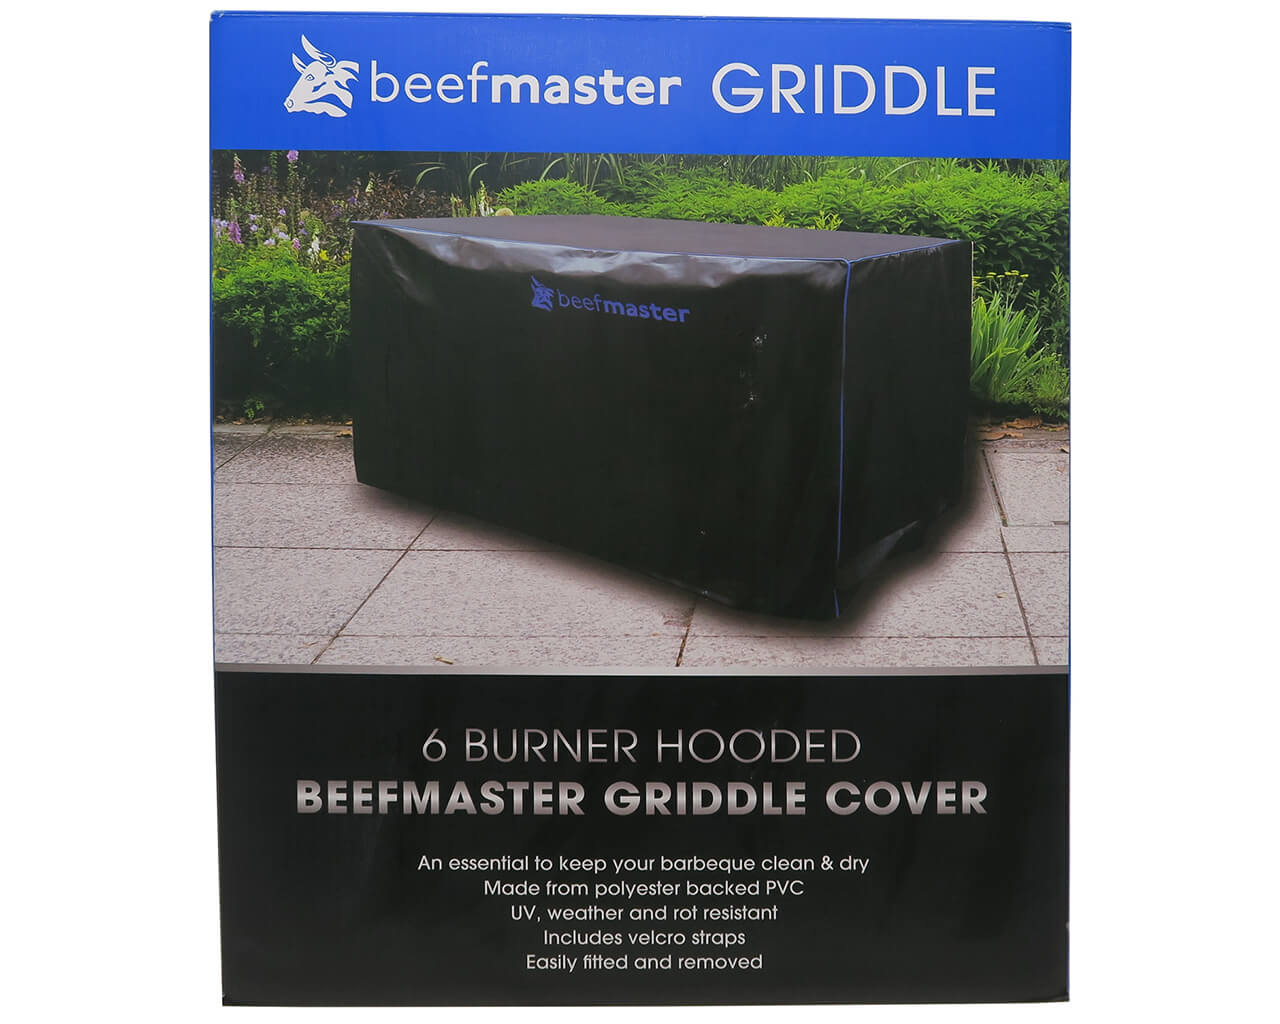 Beefmaster Griddle 6 Burner BBQ Cover, , hi-res image number null